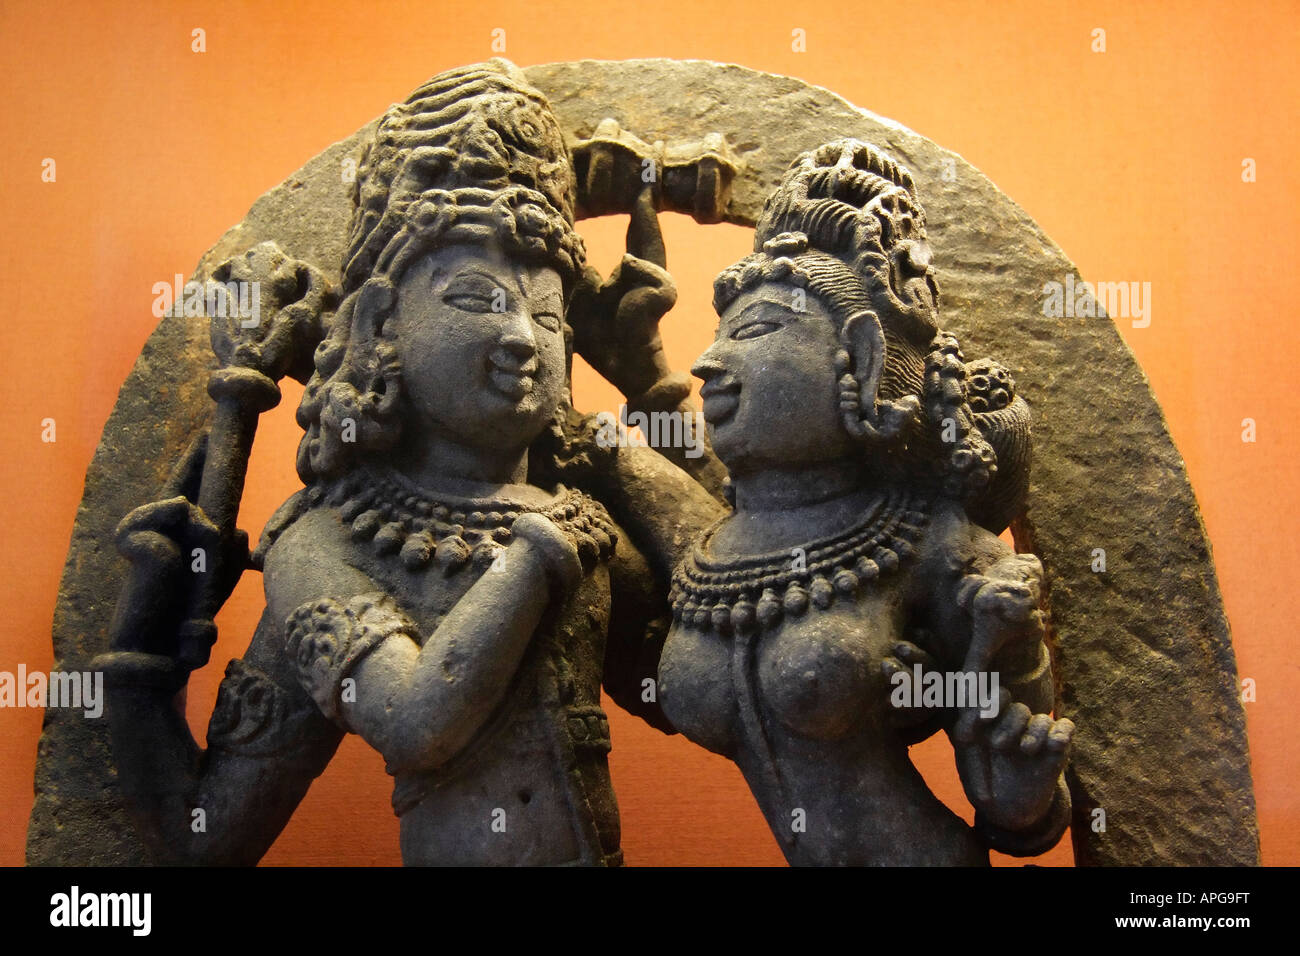 Shiva and Parvati- British Museum Stock Photo - Alamy